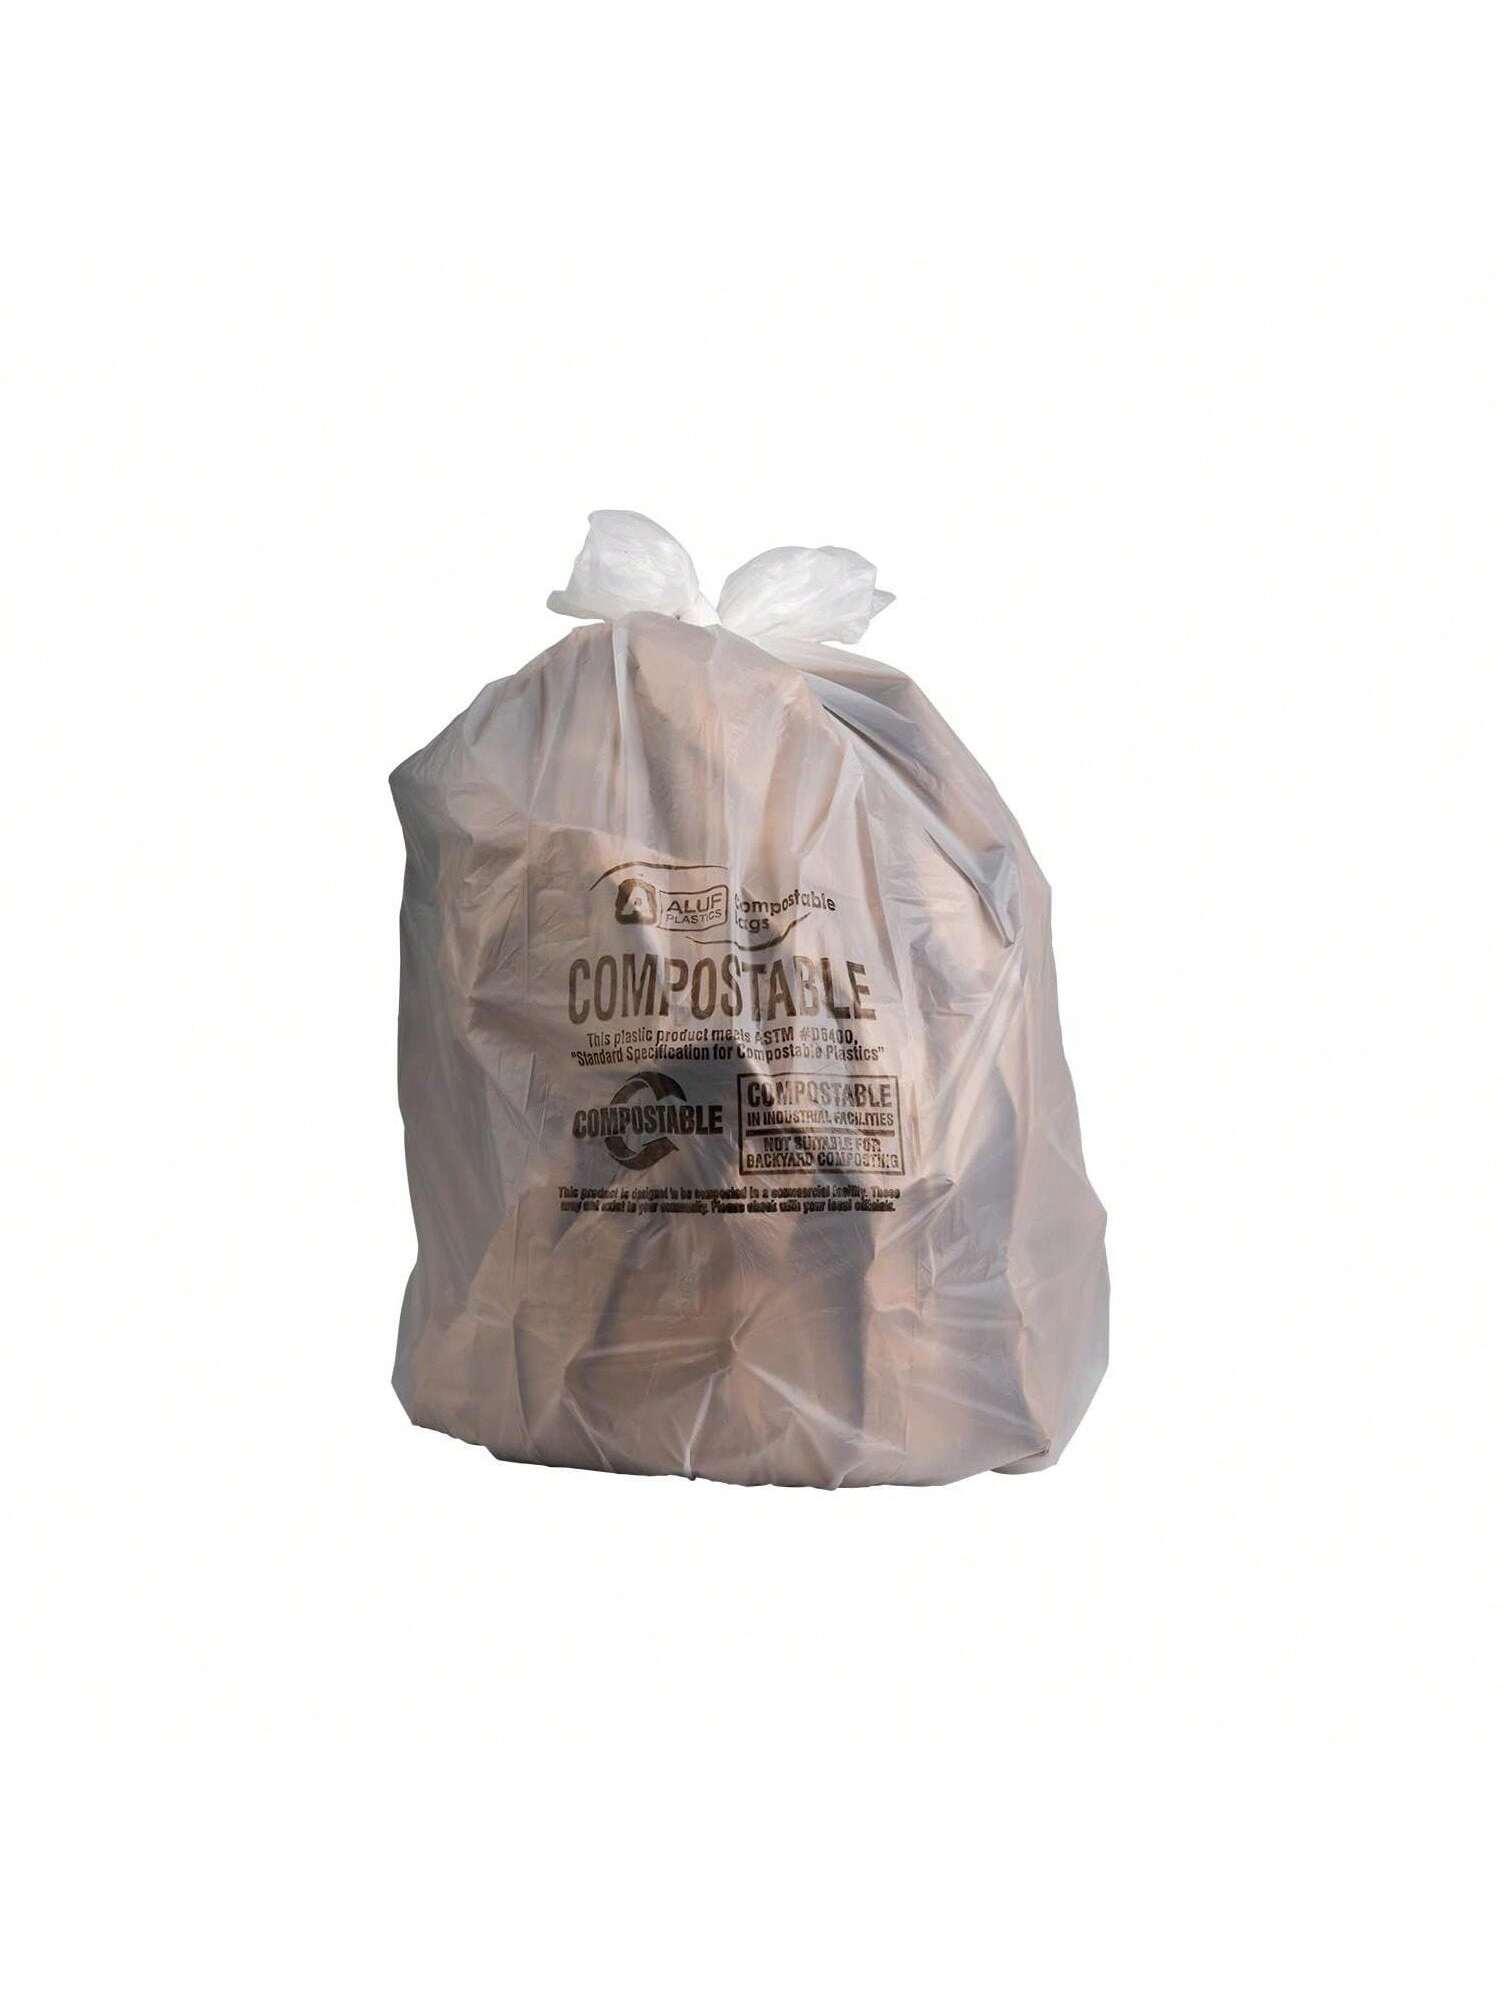 Jessie Shop 33 Gallon Garbage Trash Bag 33X39 1.2 Mil Black 150